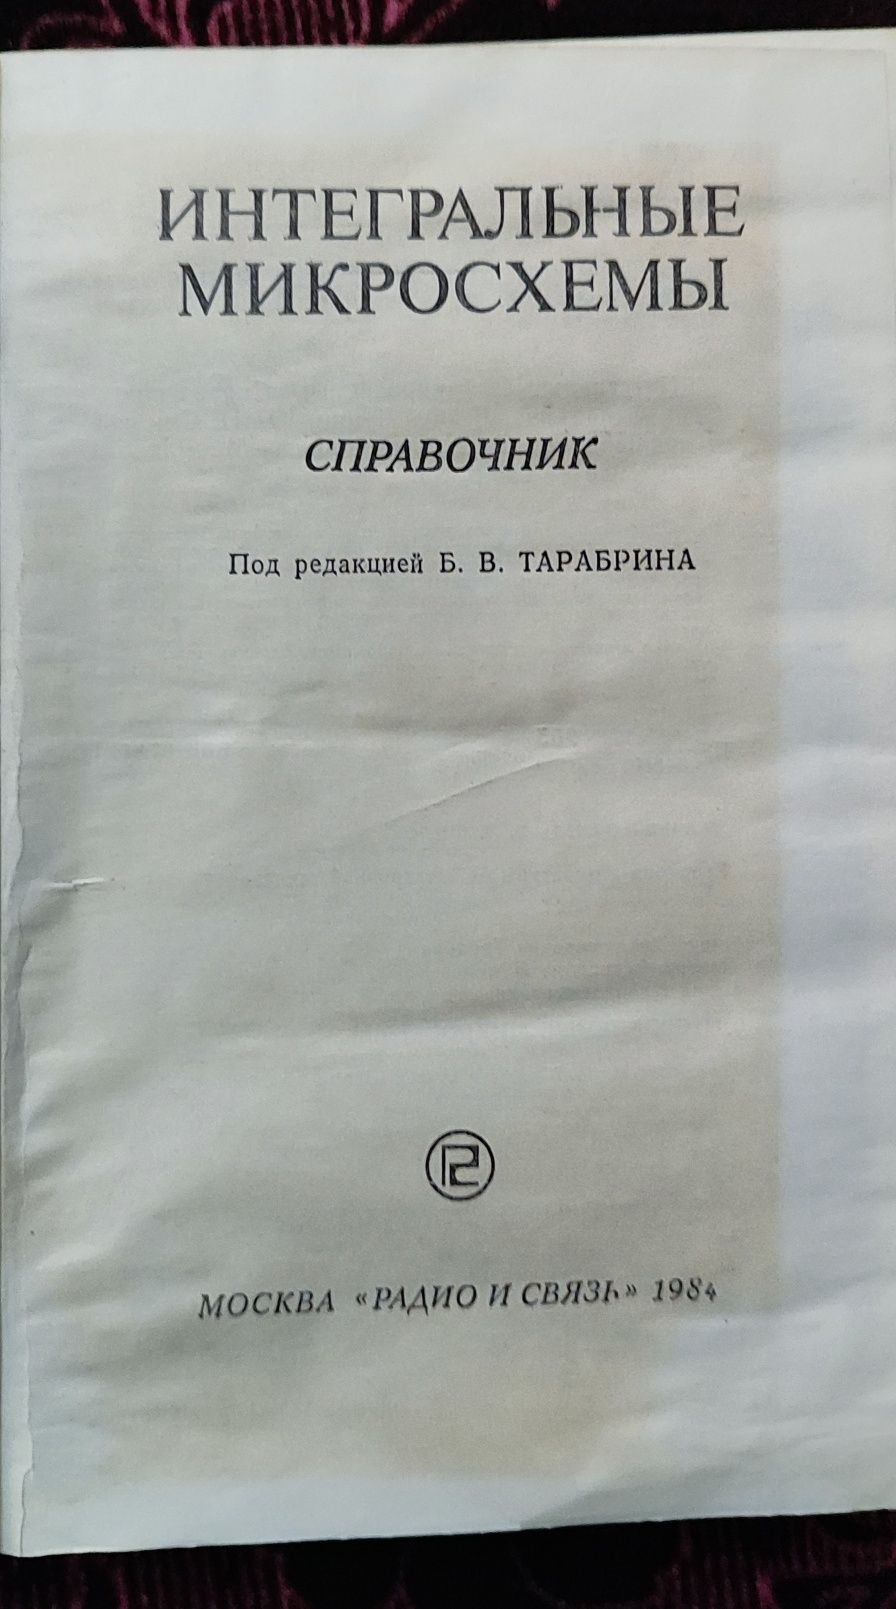 Книга  справочник "Интегральные микросхемы" Б.В.Тарабрина.1984г.